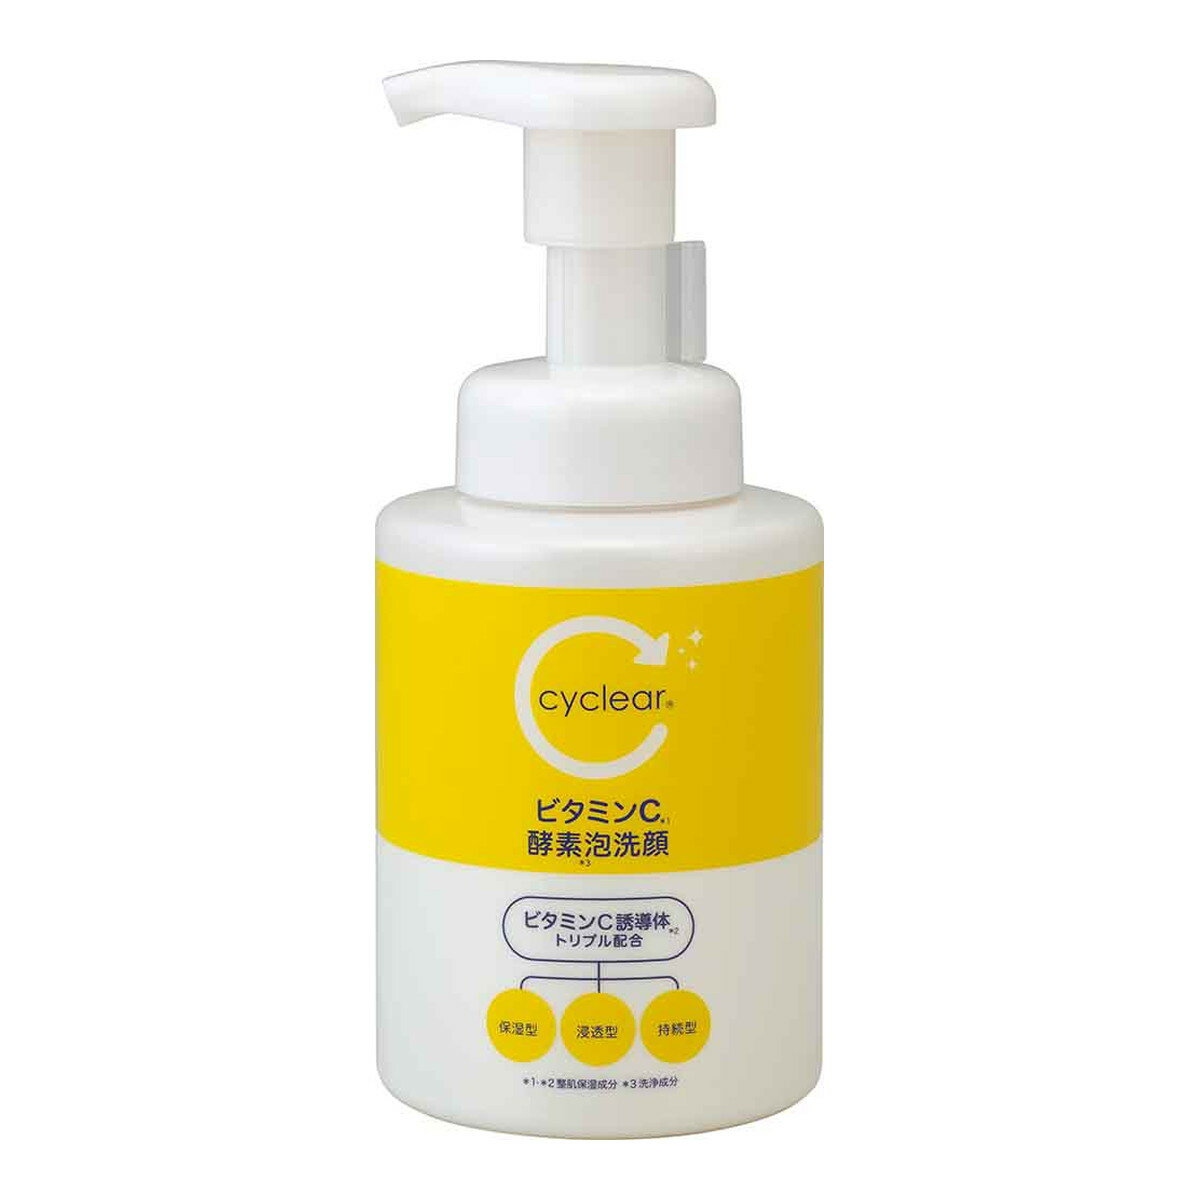 熊野油脂 cyclear ビタミンC 酵素泡洗顔 300ml 洗顔フォーム